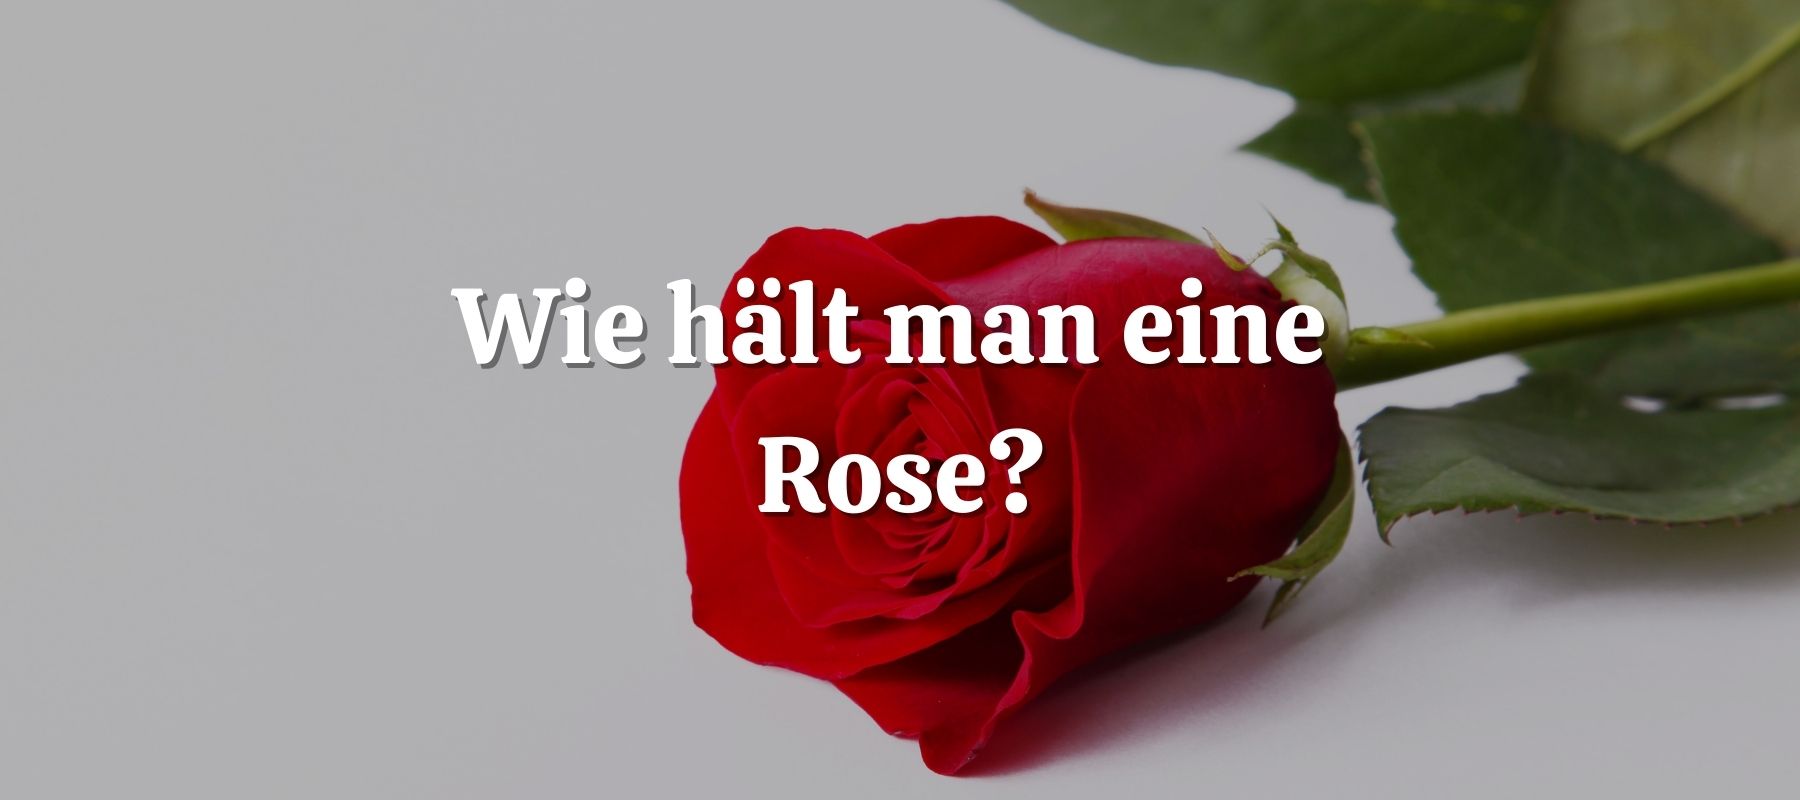 Wie hält man eine Rose?